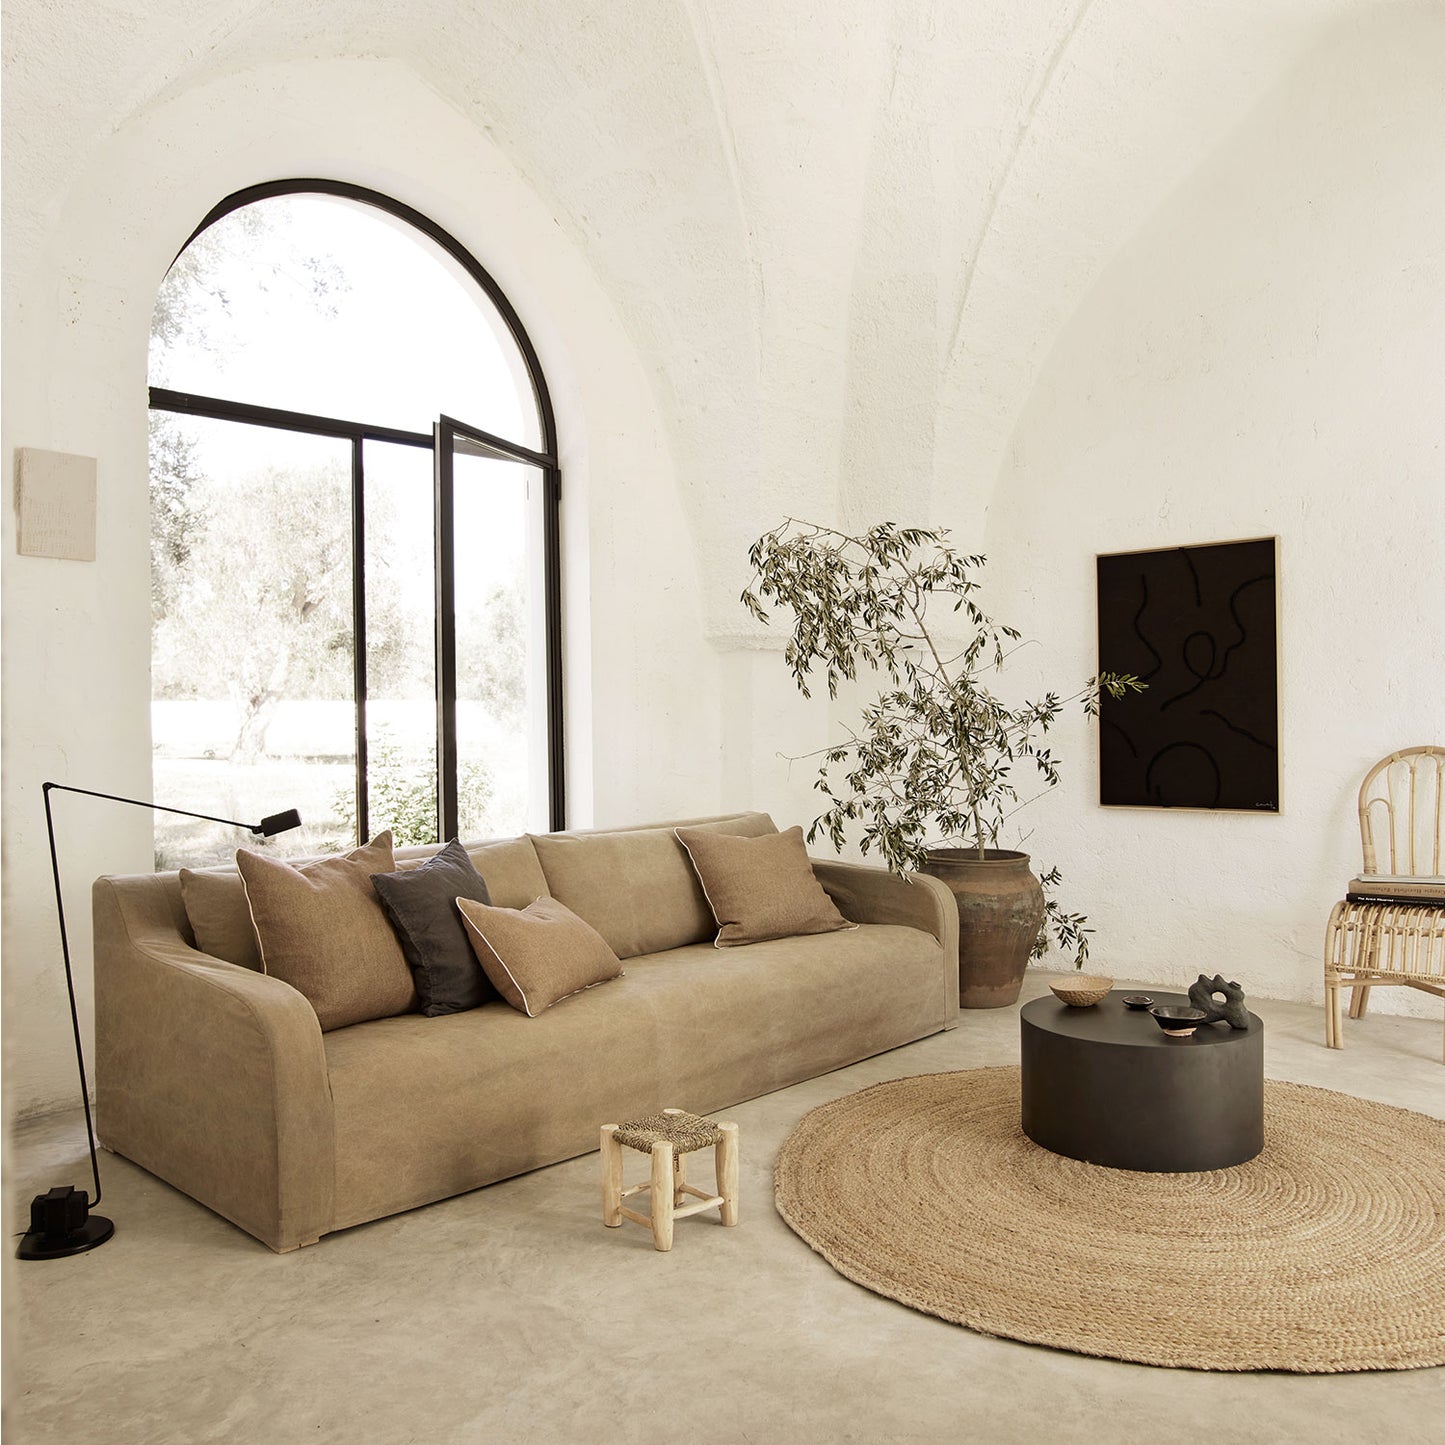 Tine K Home | Sofa Soft XL - 290 cm